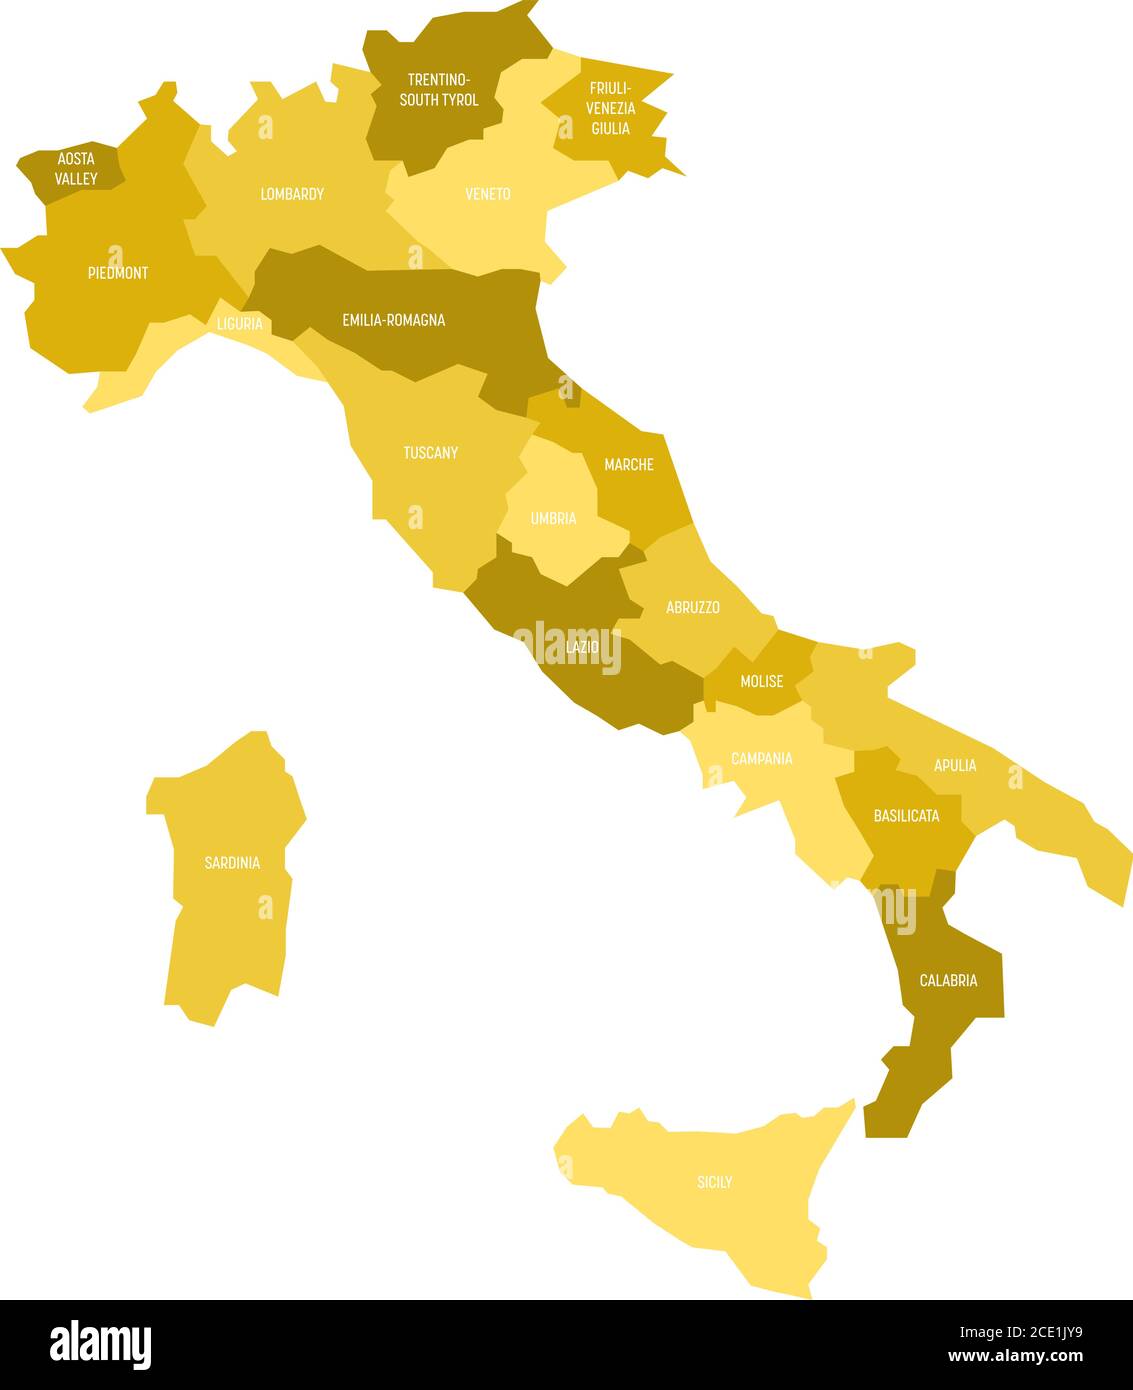 Karte von Italien in 20 Verwaltungsregionen in vier Gelbtönen unterteilt. Weiße Etiketten. Einfache flache Vektordarstellung. Stock Vektor